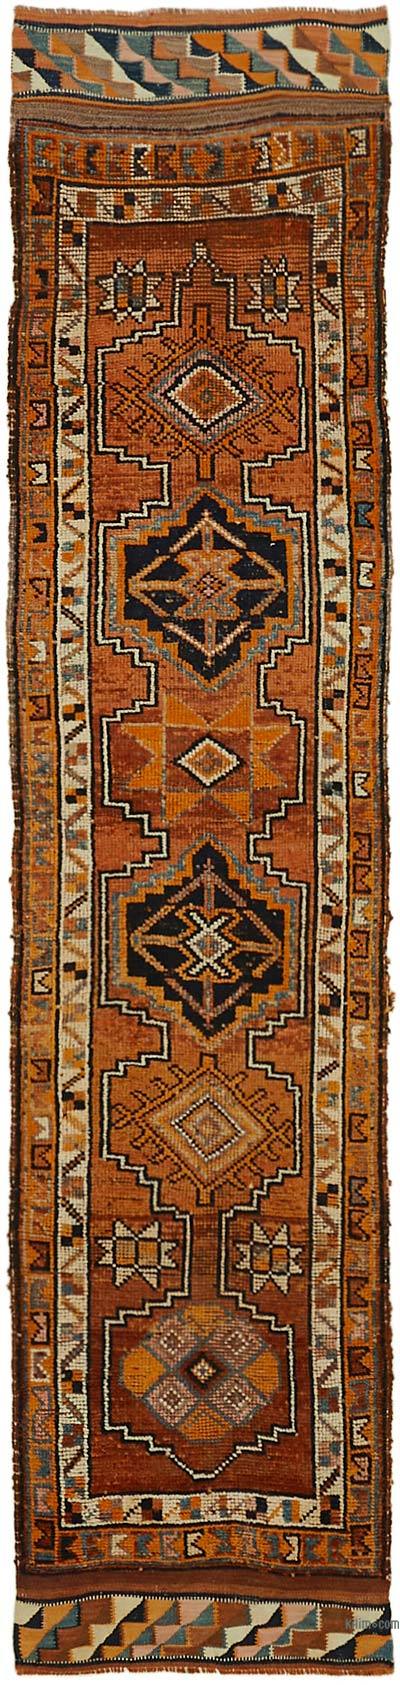 复古土耳其地毯- 3英尺2英寸x12英尺6英寸(38英寸)。x 150。)